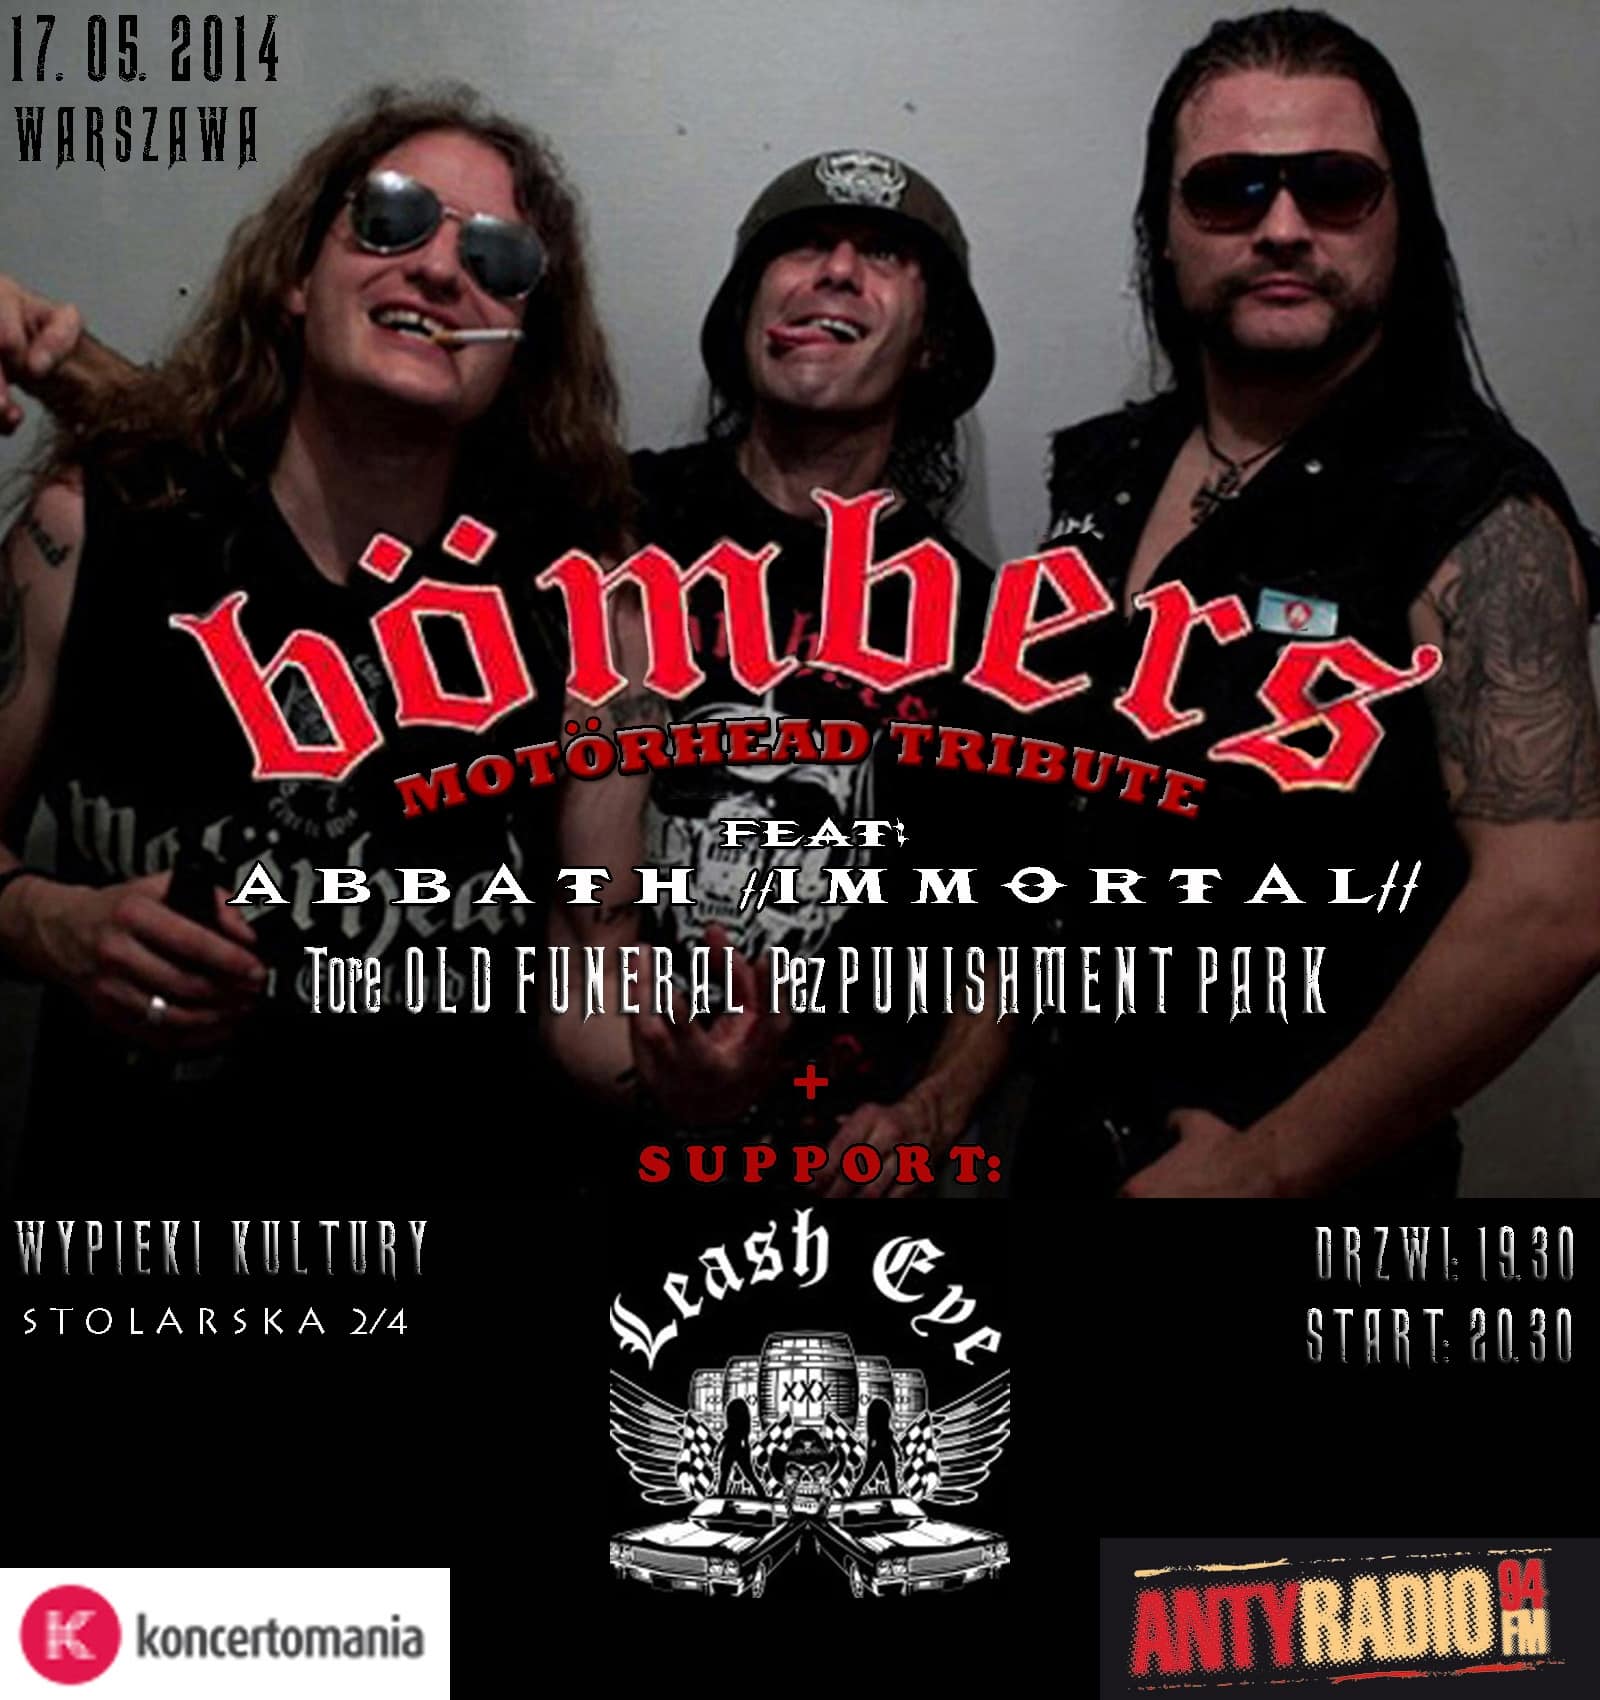 BÖMBERS - coverband MOTÖRHEAD założony przez lidera Immortal - 17 maja w Warszawie!